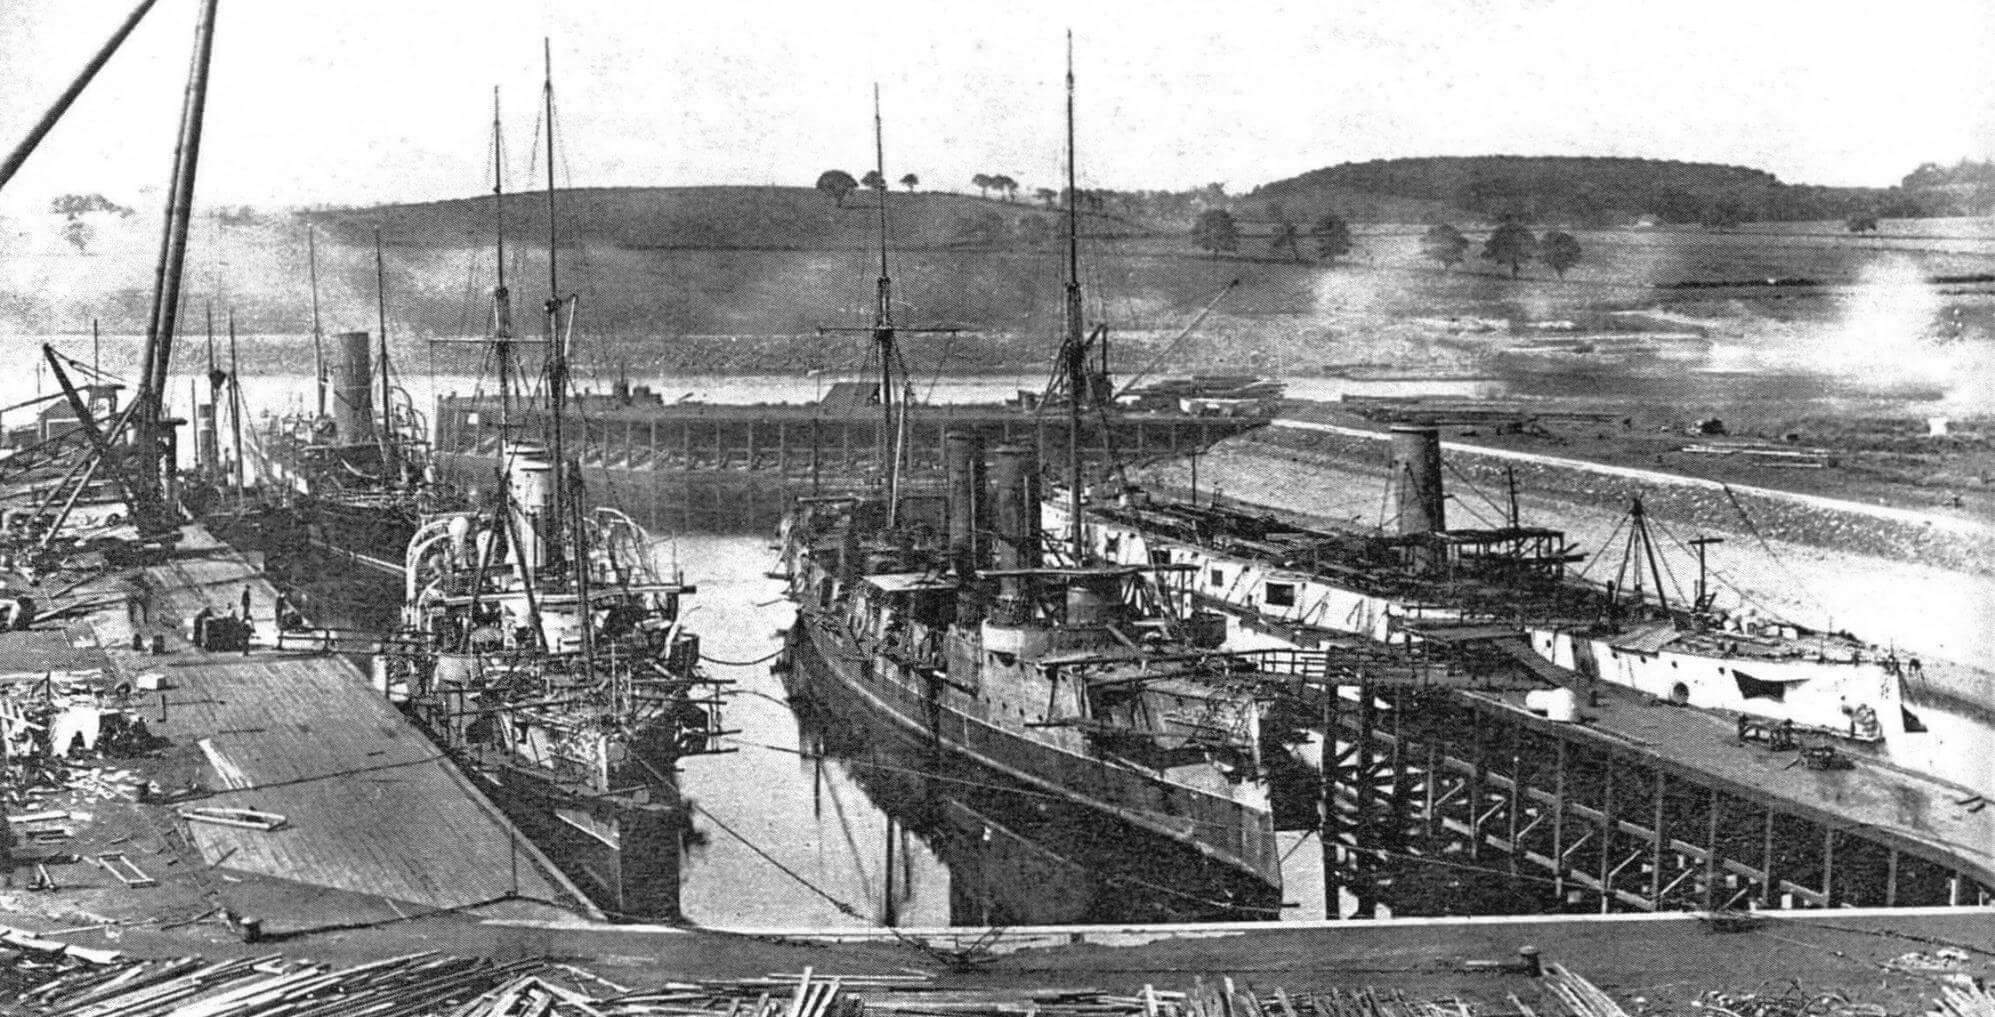 «Тиёда» у достроечной стенки в Клайдбанке (на фото справа). В центре бронепалубные крейсера 3-го класса «Тауранга»и «Рингарума», заказанные британским Адмиралтейством для Австралийской станции, работы на них близятся к завершению